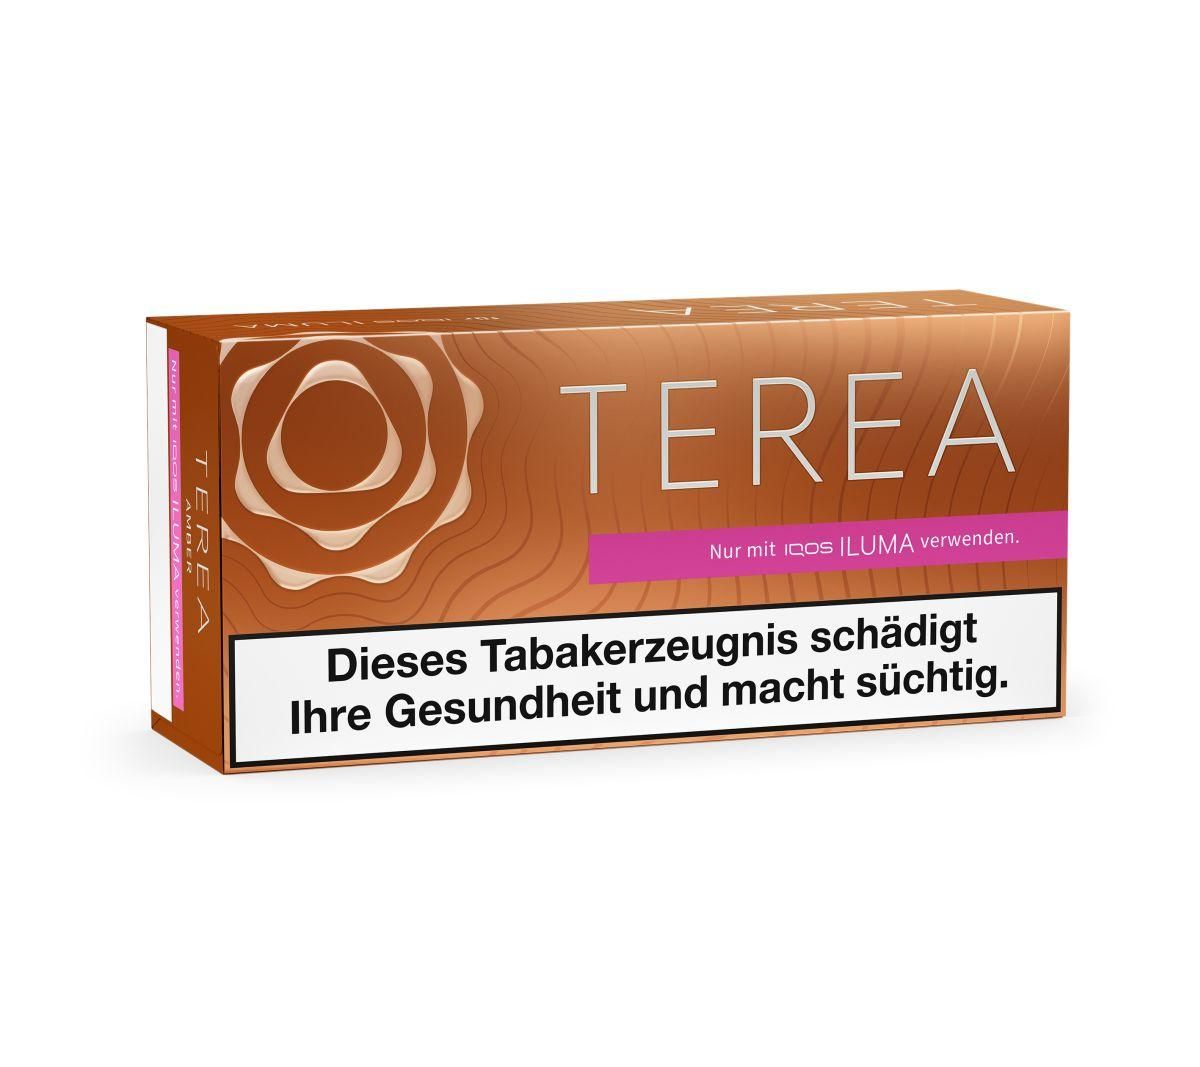 IQOS Terea - Amber Tabaksticks für IQOS ILUMA / ILUMA ONE (20 Stück)